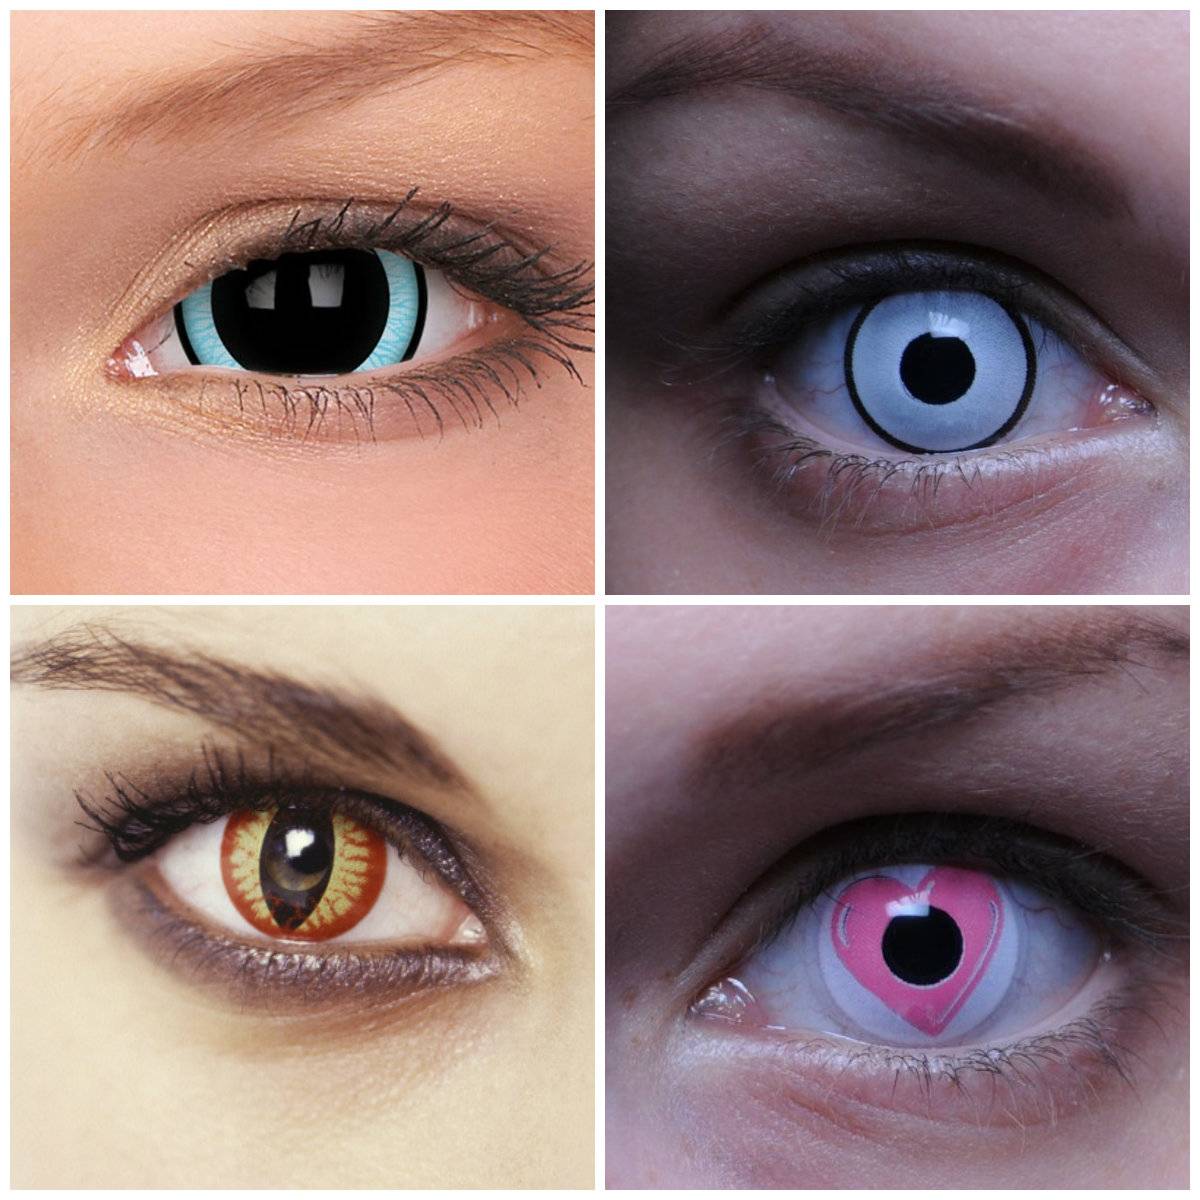 Вредны ли контактные линзы для глаз: плюсы и минусы oculistic.ru
вредны ли контактные линзы для глаз: плюсы и минусы